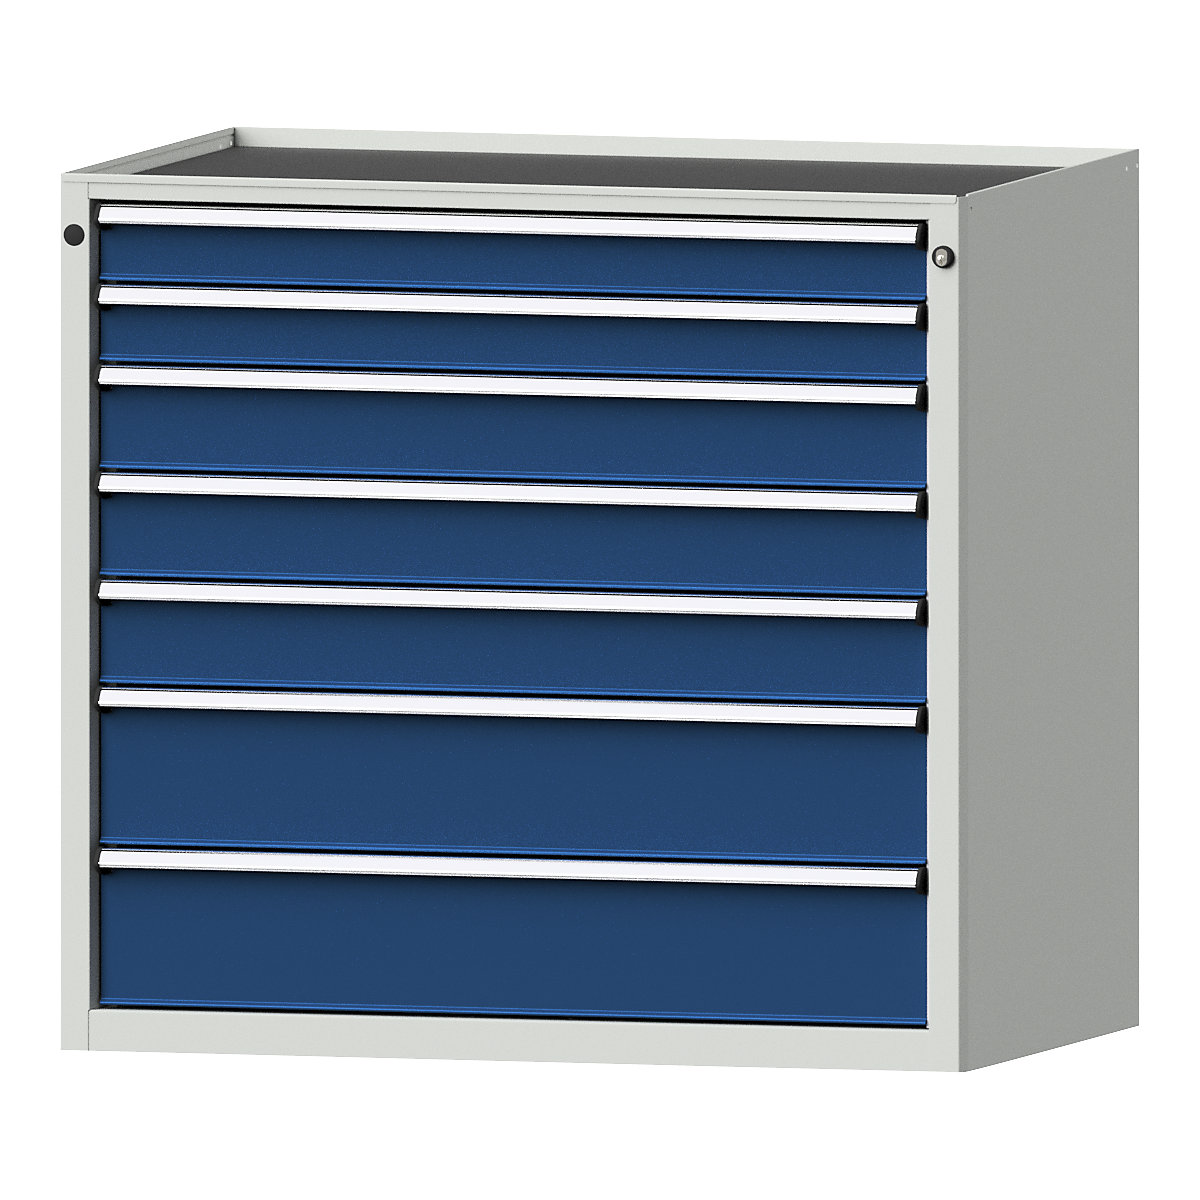 Armoire à tiroirs – ANKE, l x p 1060 x 675 mm, charge max. tiroirs 200 kg, 7 tiroirs, hauteur 980 mm, façade bleu gentiane-12